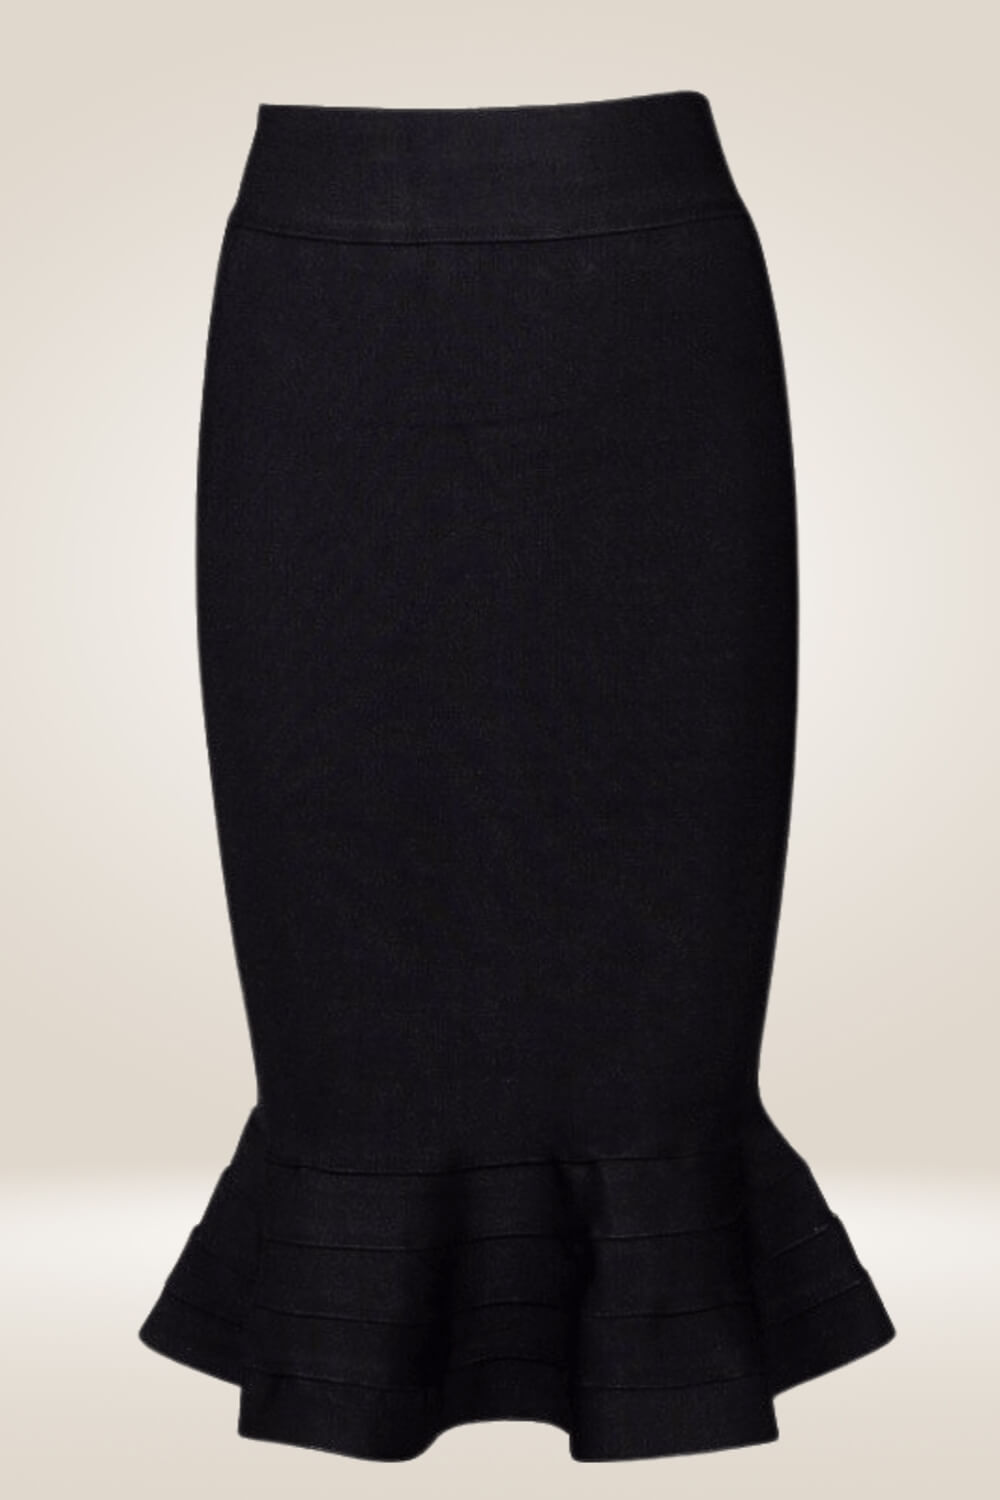 Bodycon Mermaid Black Midi Skirt - TGC Boutique - Bodycon skirt